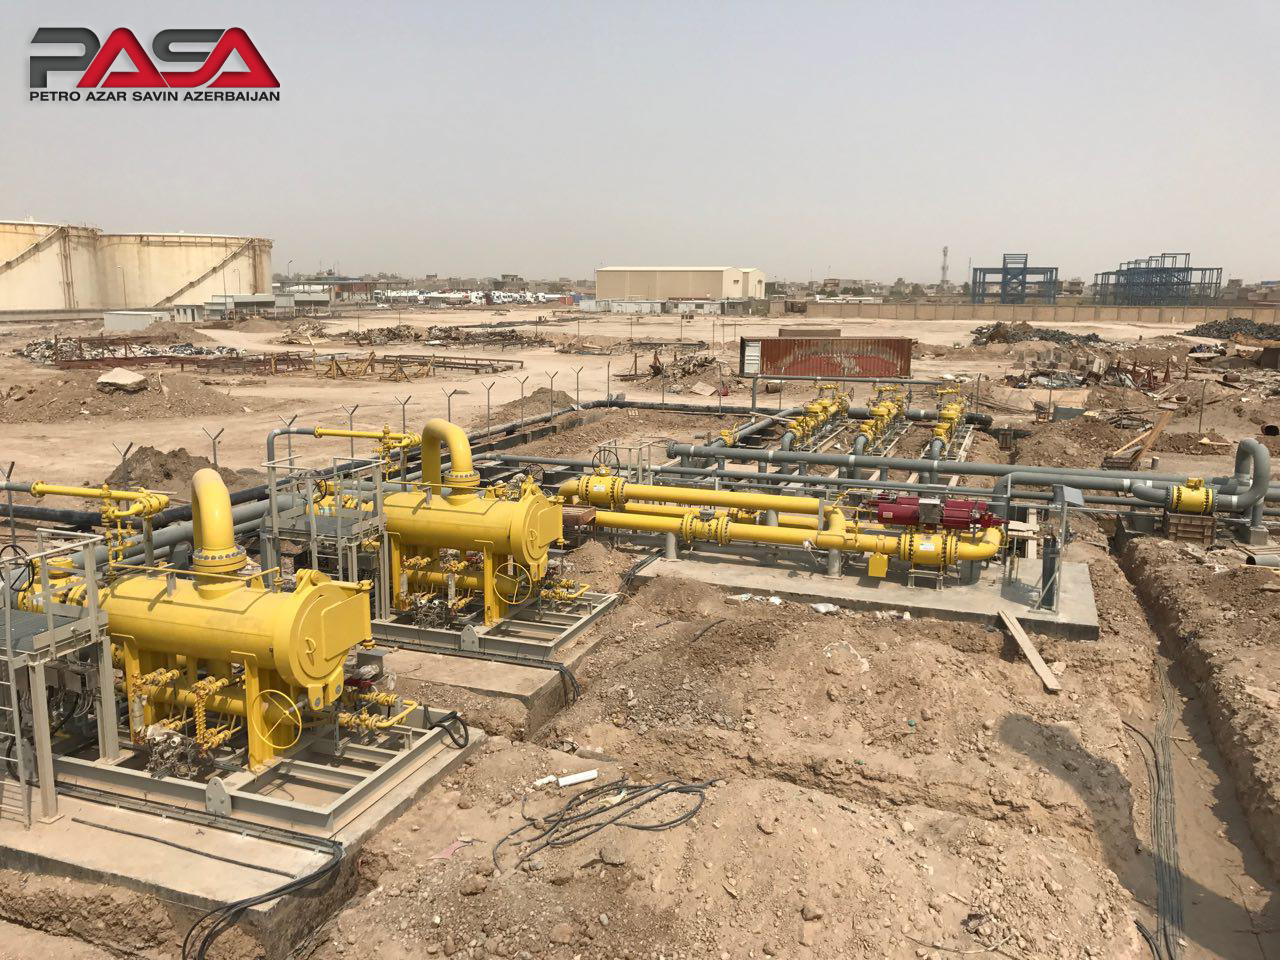  راه اندازی و بهره برداری از ایستگاه تقلیل فشار گاز (ICG) نیروگاه الصدر بغداد